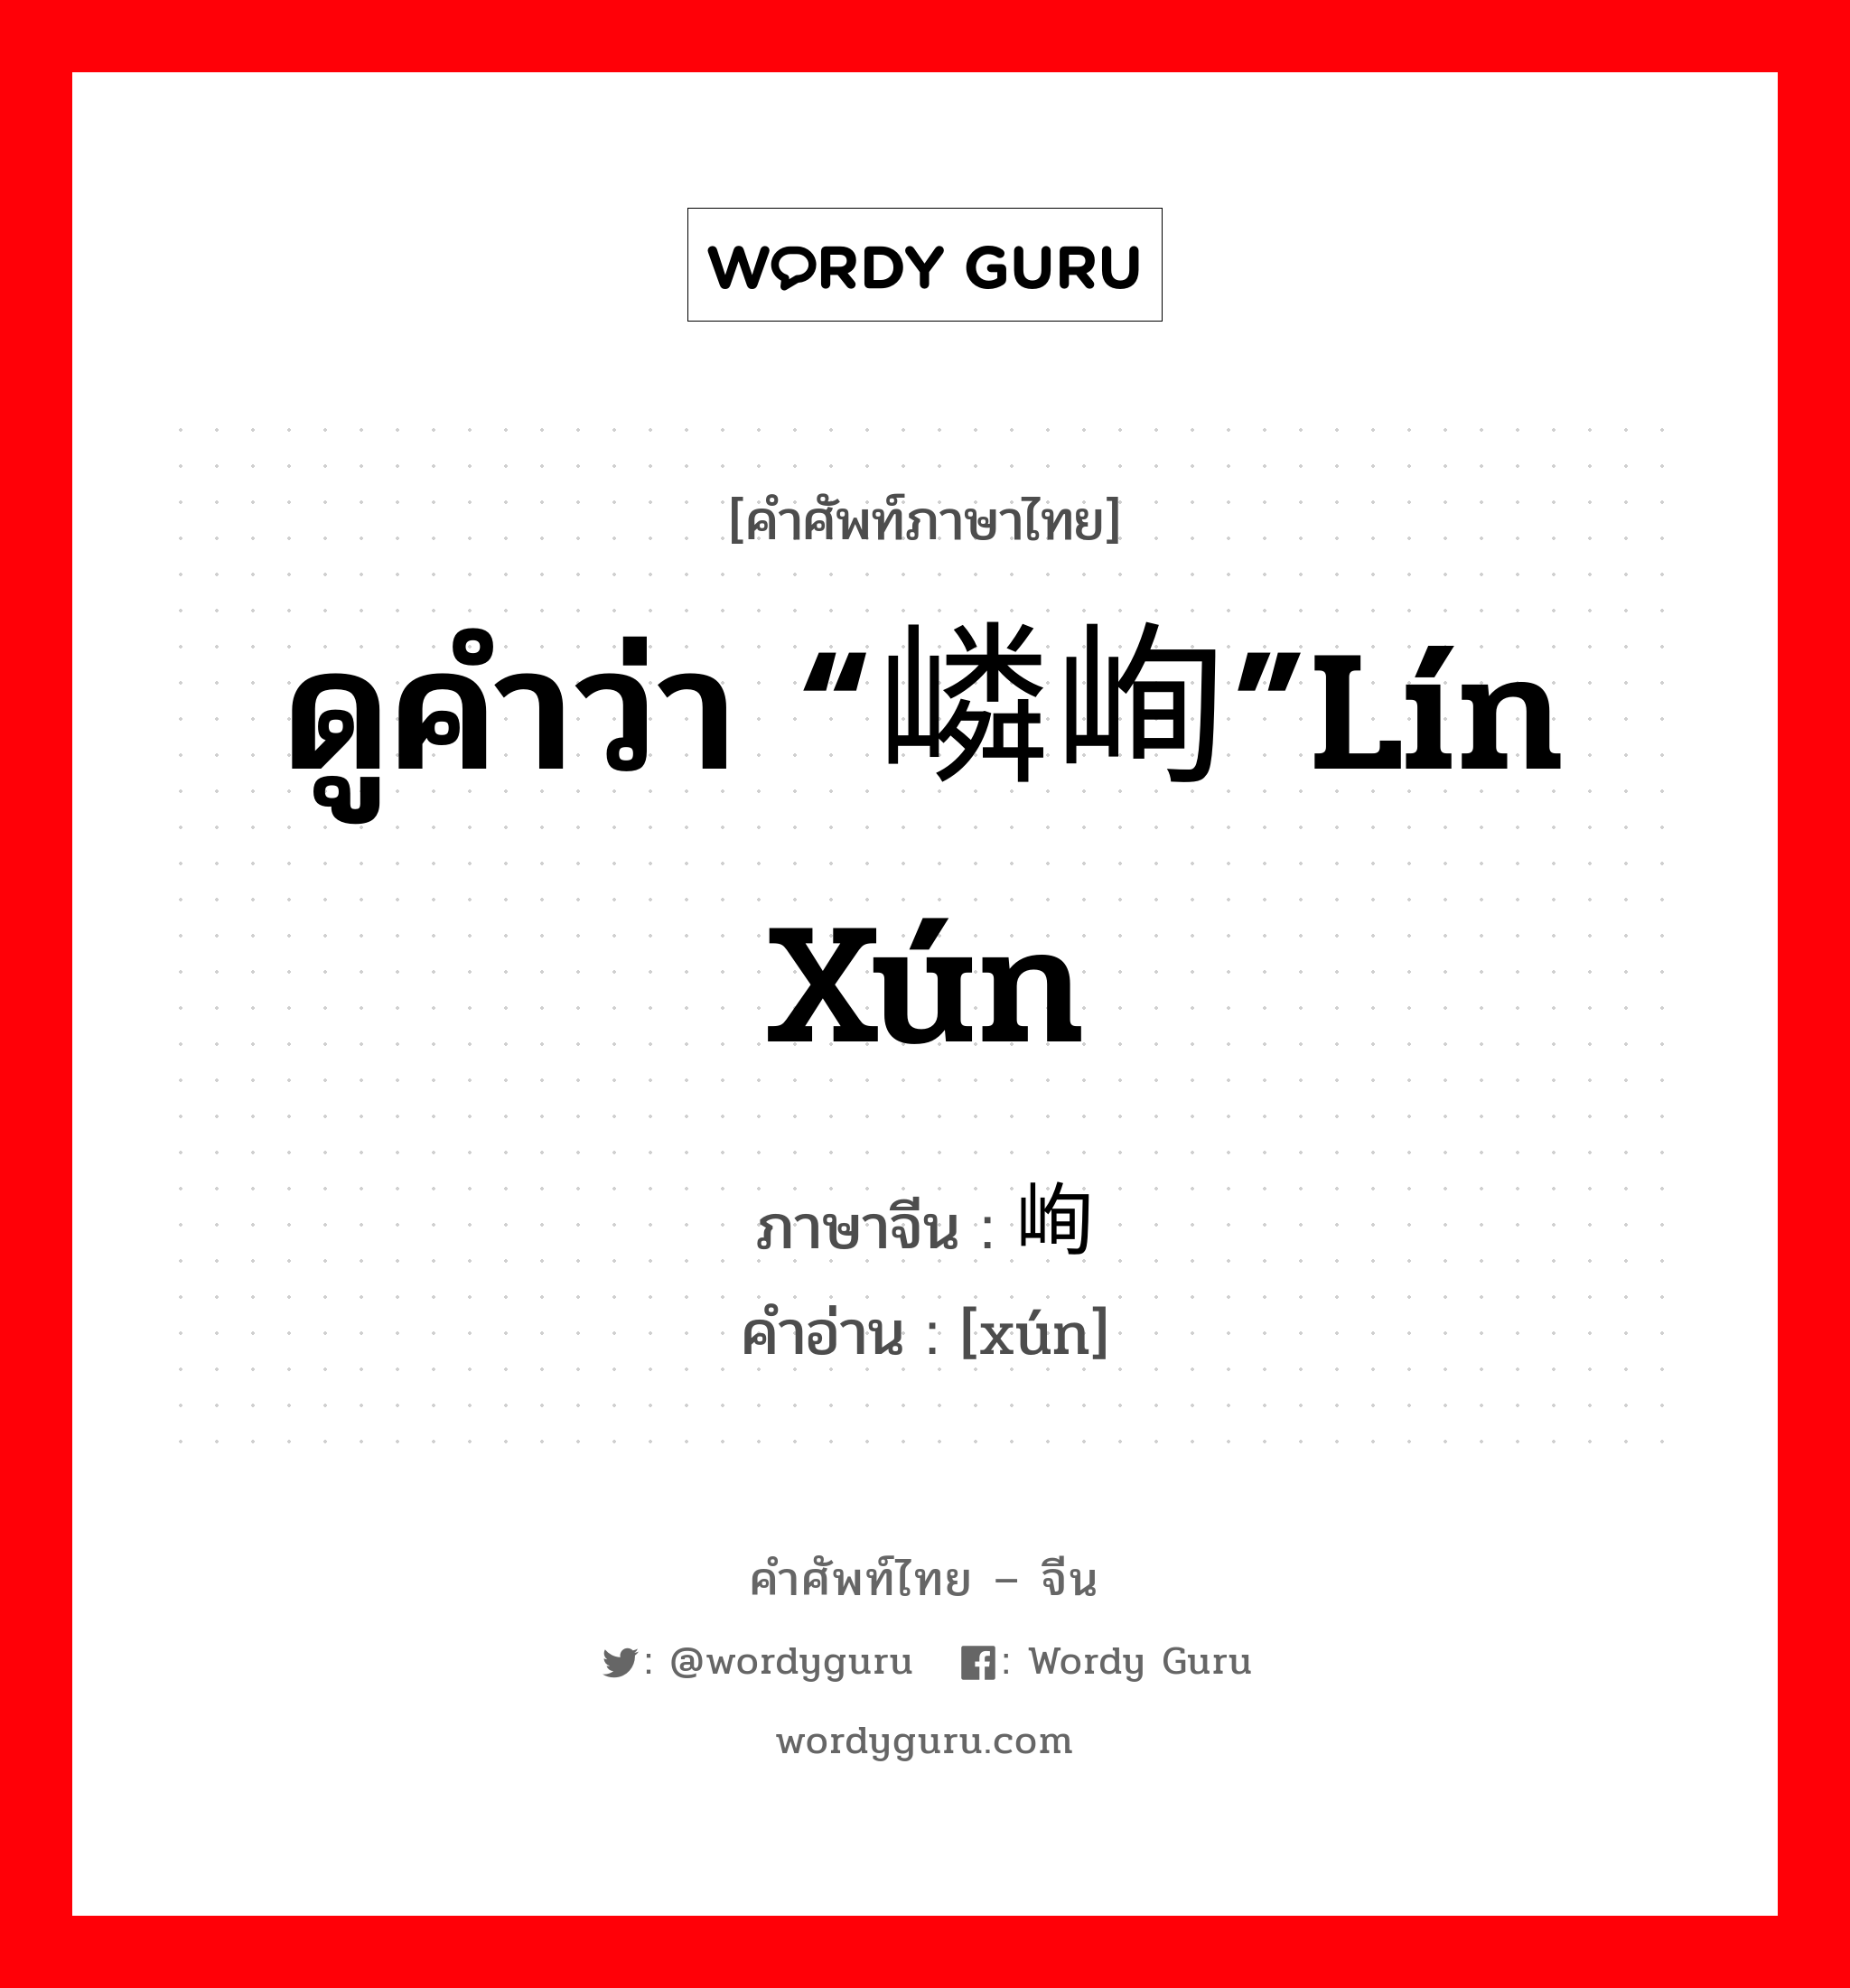 ดูคำว่า “嶙峋”lín xún ภาษาจีนคืออะไร, คำศัพท์ภาษาไทย - จีน ดูคำว่า “嶙峋”lín xún ภาษาจีน 峋 คำอ่าน [xún]